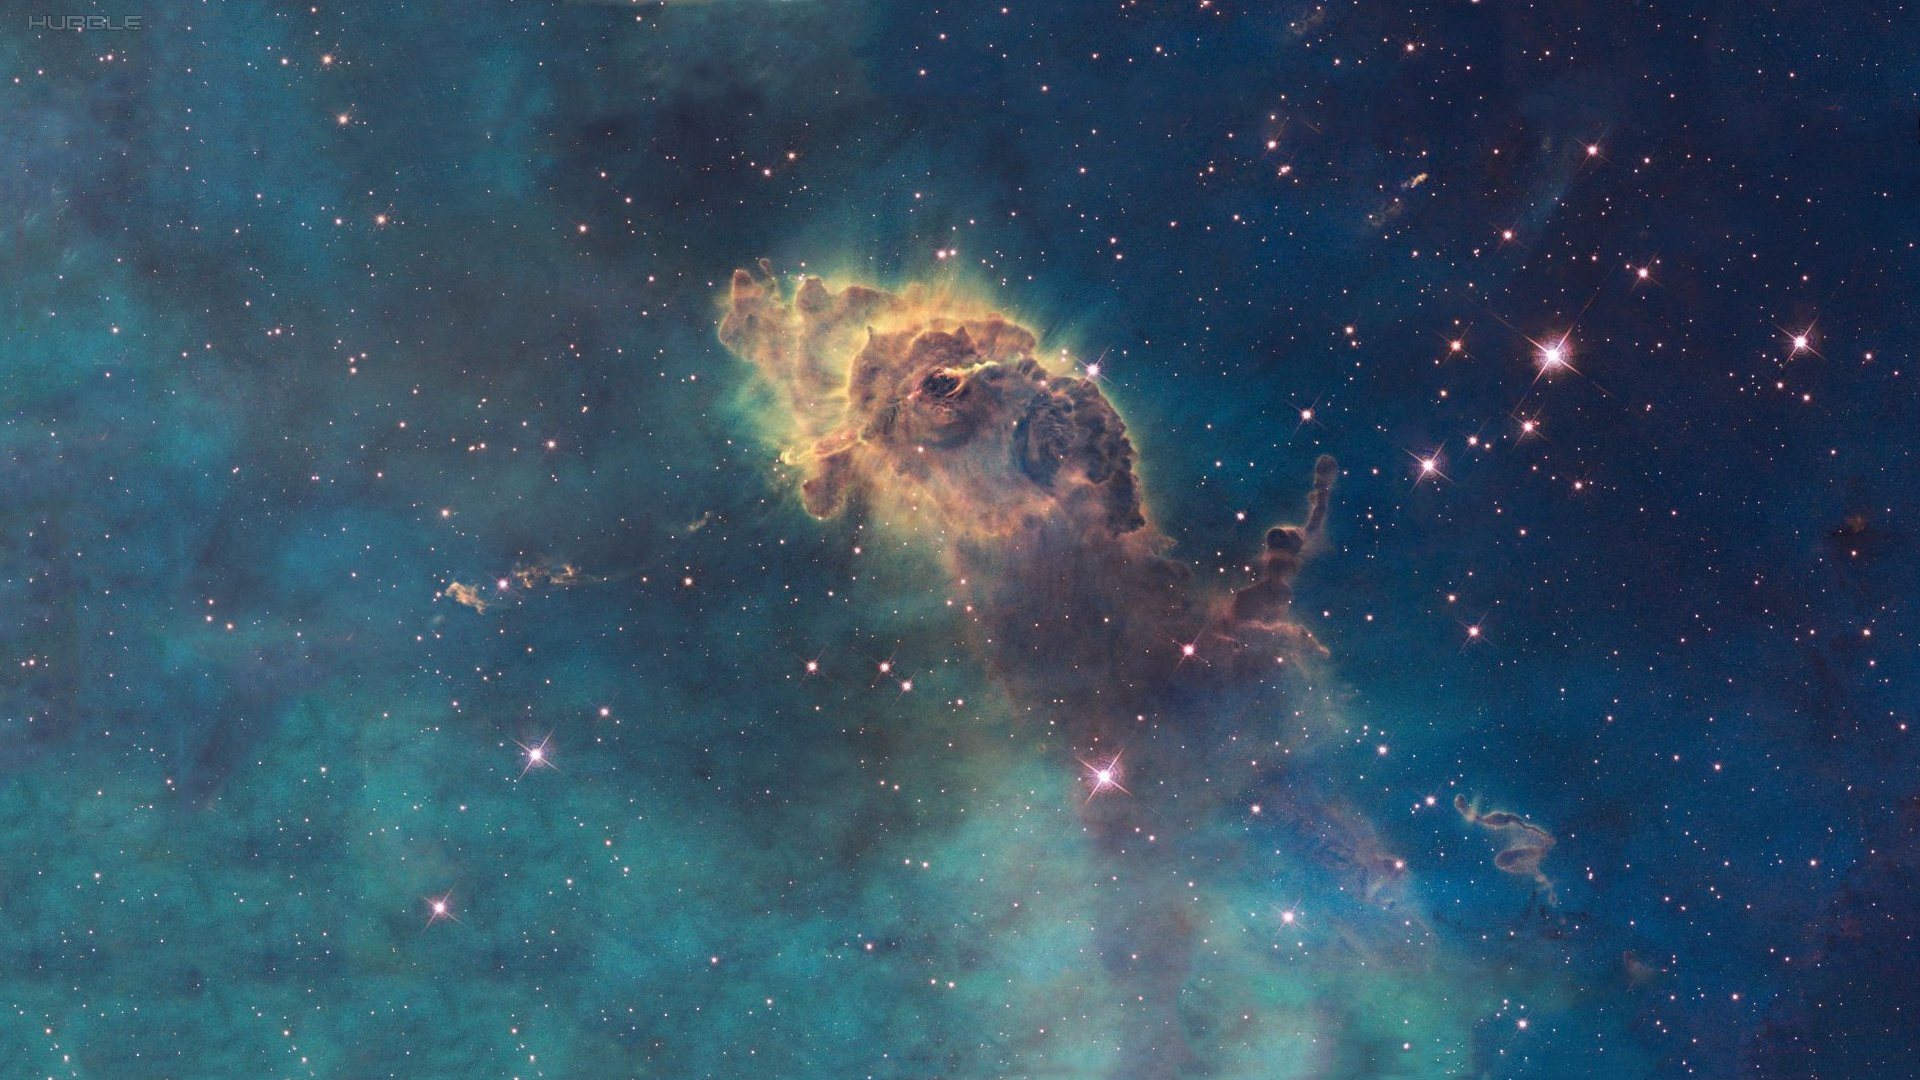 Обои космос туманность space nebula картинки на рабочий стол на тему Космос - скачать бесплатно